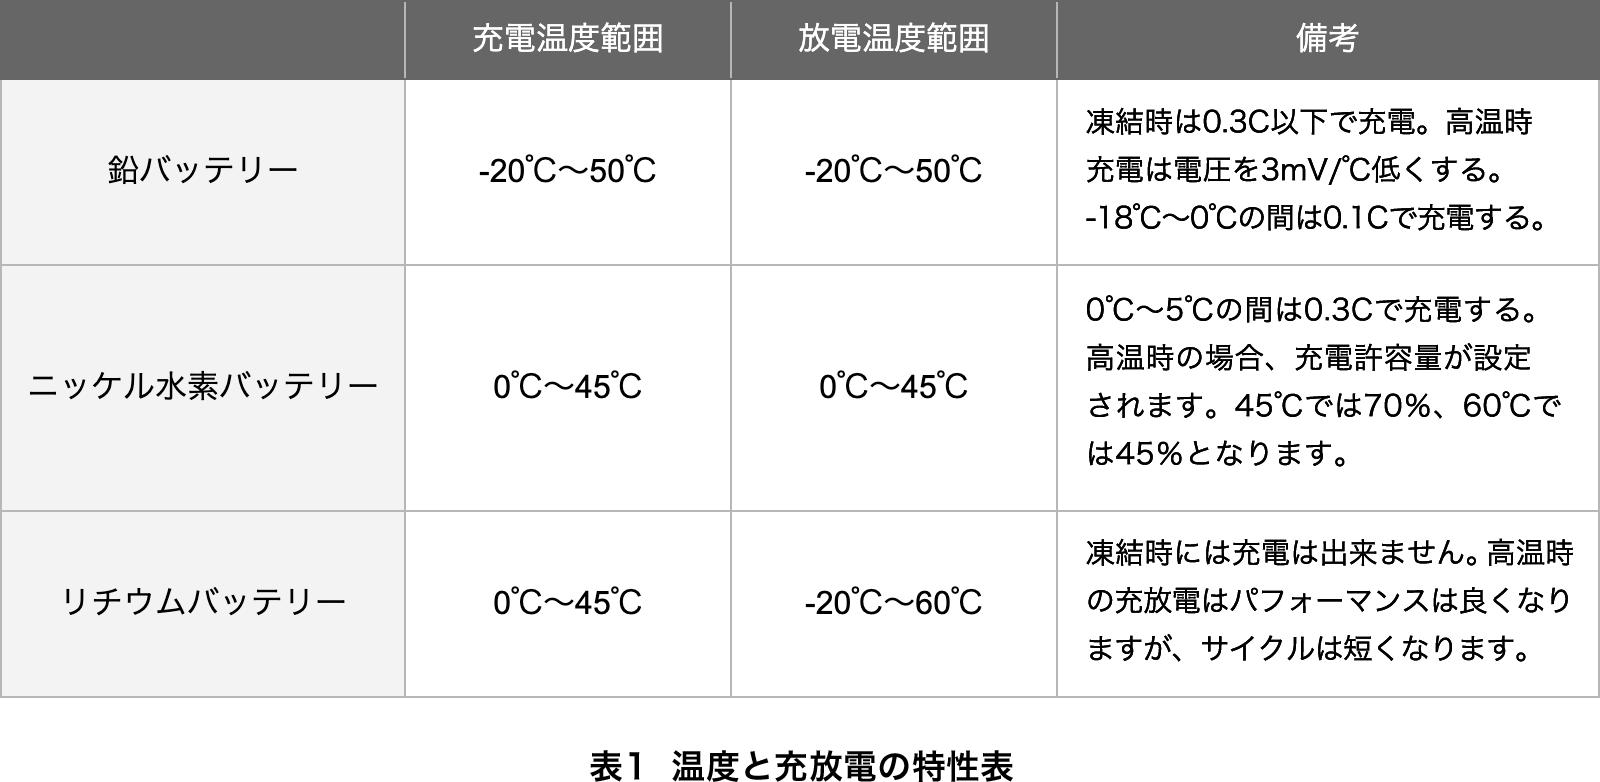 表1  温度と充放電の特性表